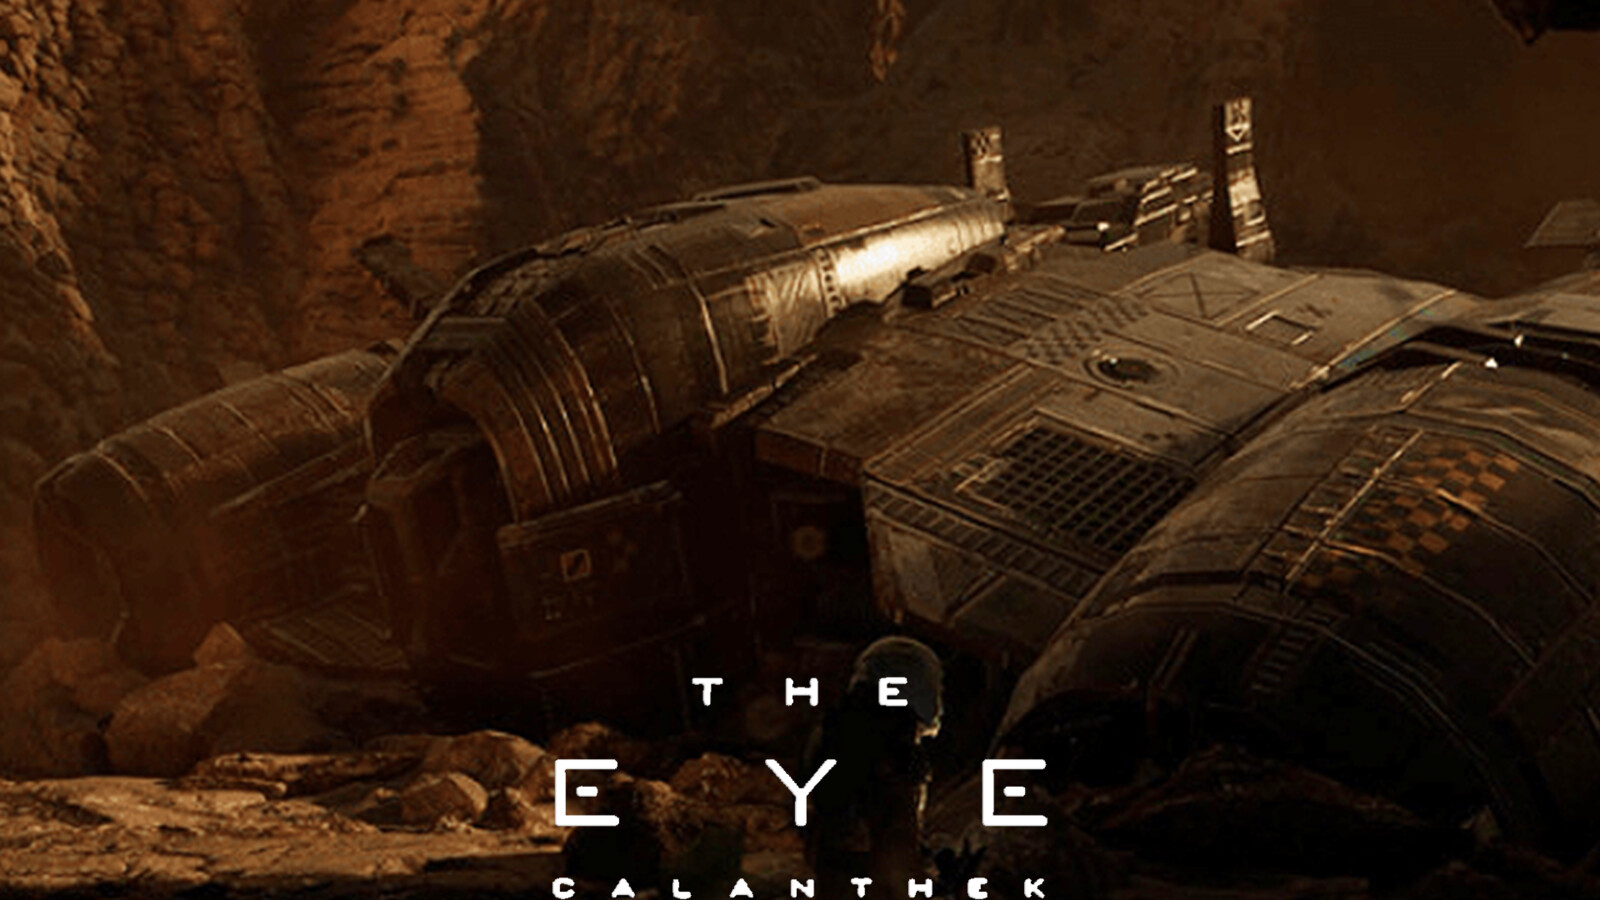 THE EYE  Calanthek - Space craft